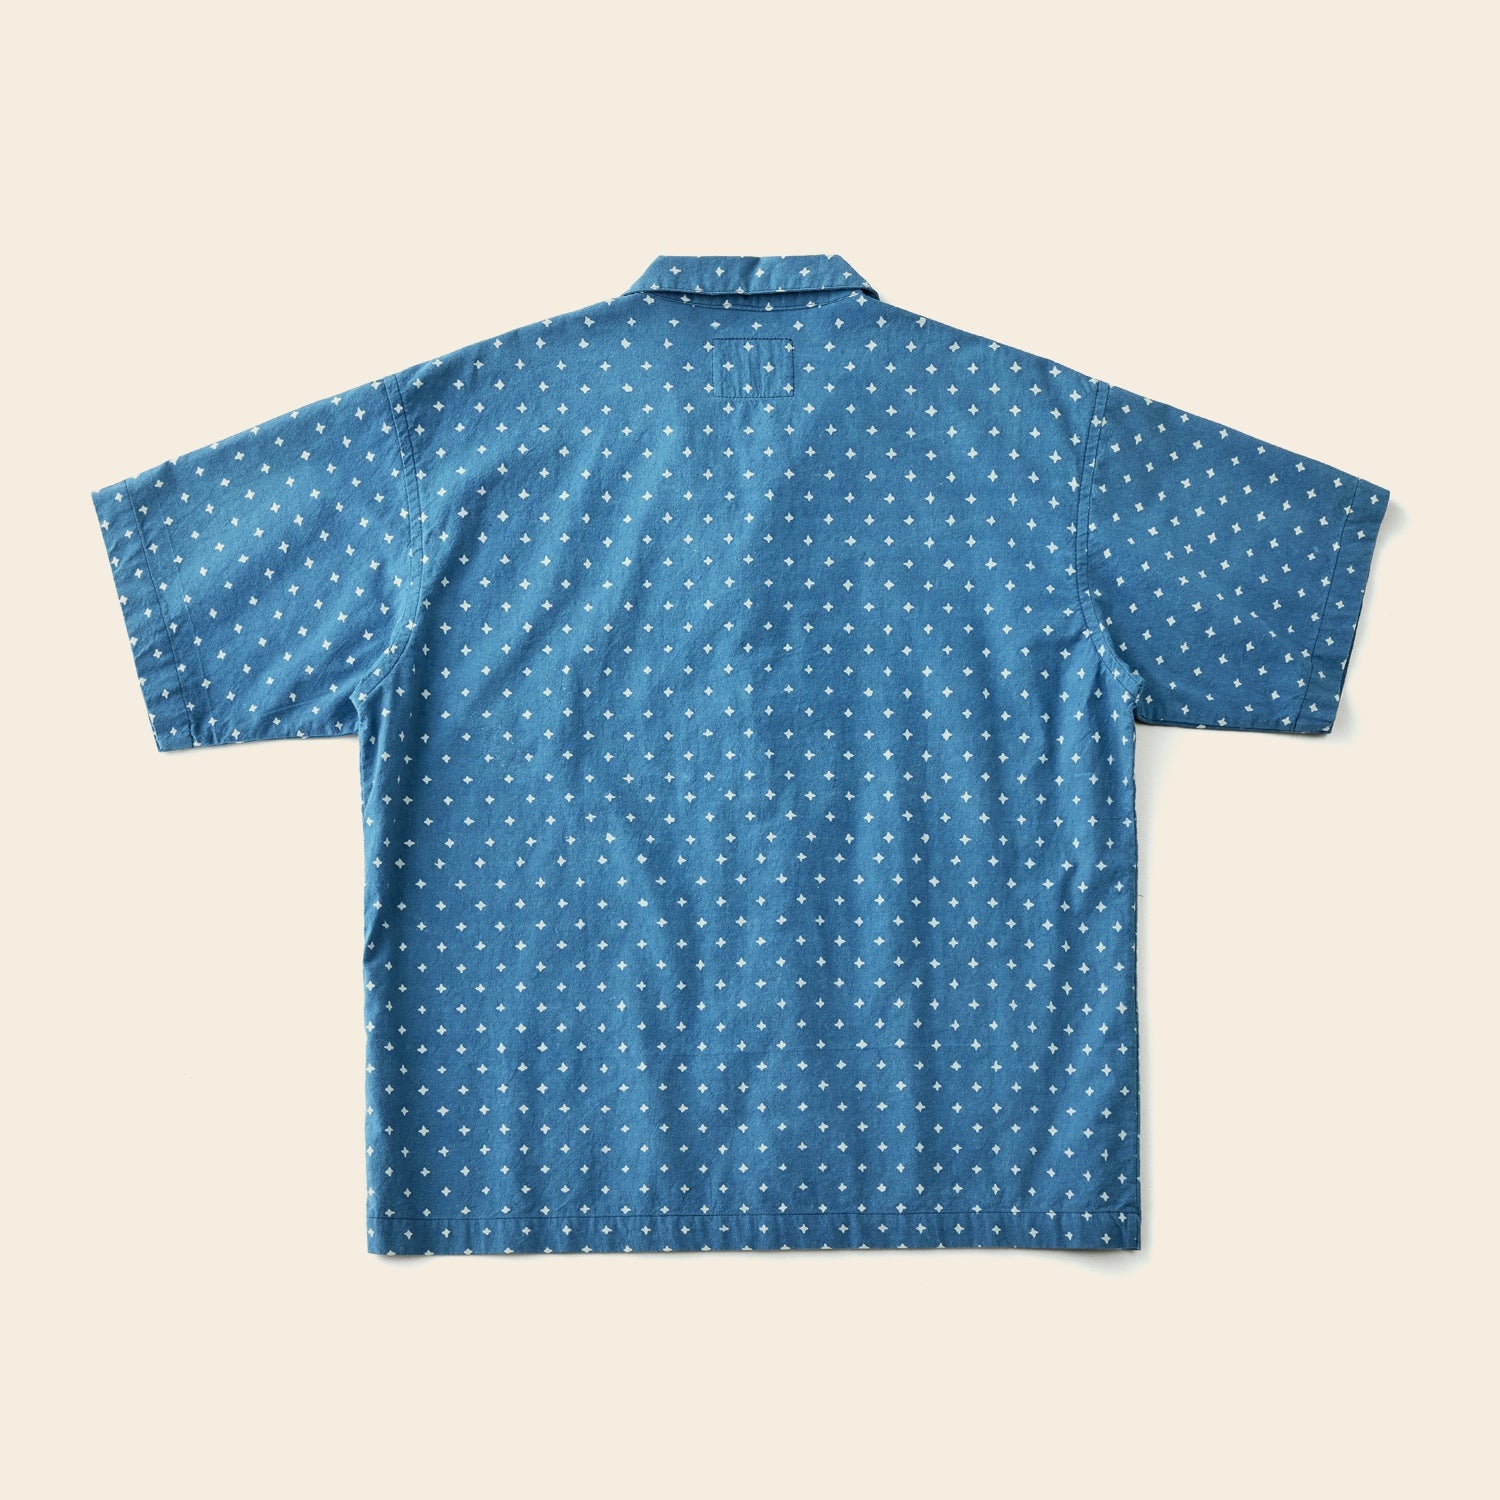 ろうけつ染めによる四芒星/梅花柄 2パターン展開 本藍染めオープンカラーシャツ S~XL S / 四芒星(写真1枚目)